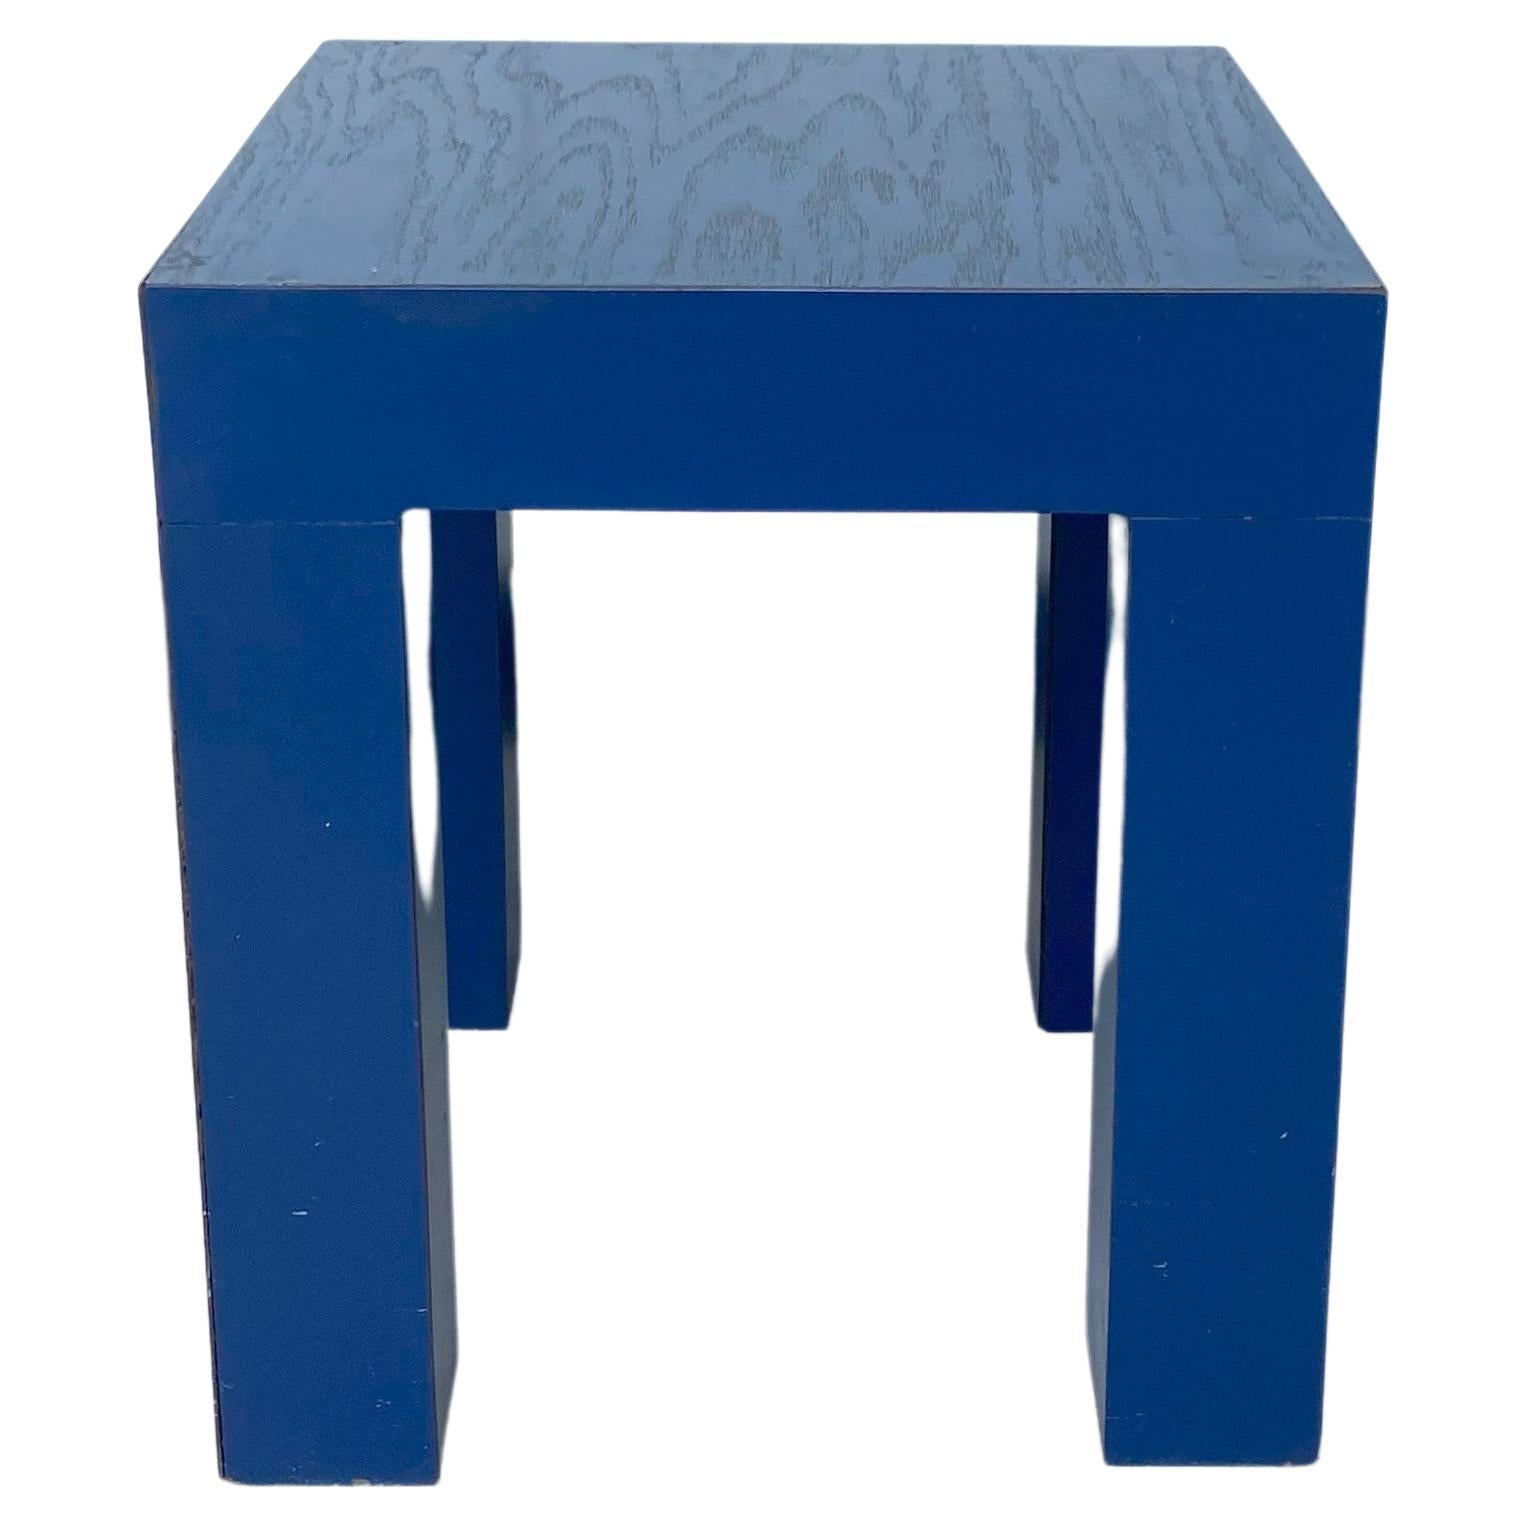 Table basse carrée bleue d'appoint postmoderne de style Memphis, petit modèle